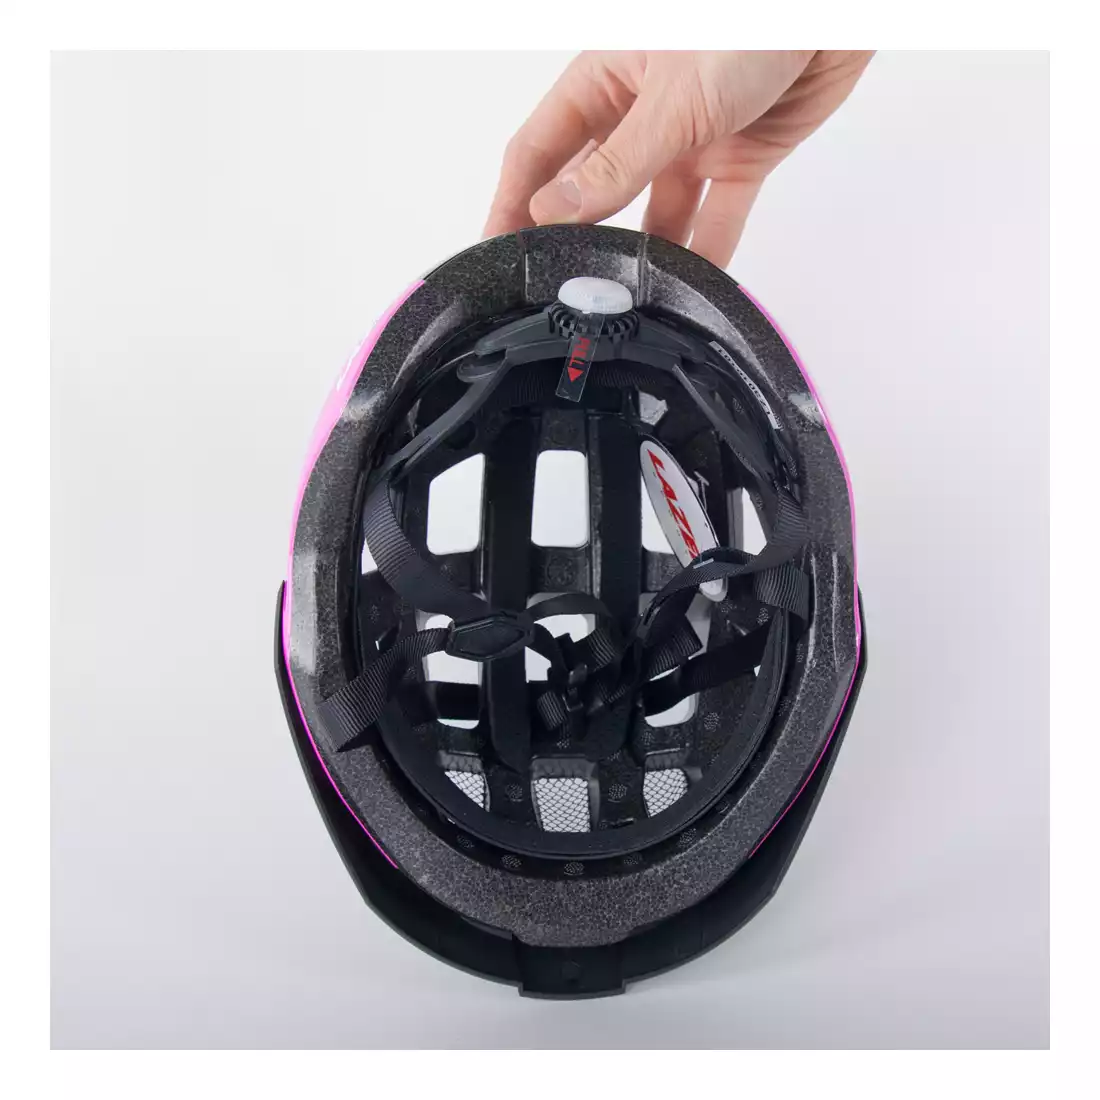 LAZER damski kask rowerowy Petit DLX Siatka + Led czarno różowy